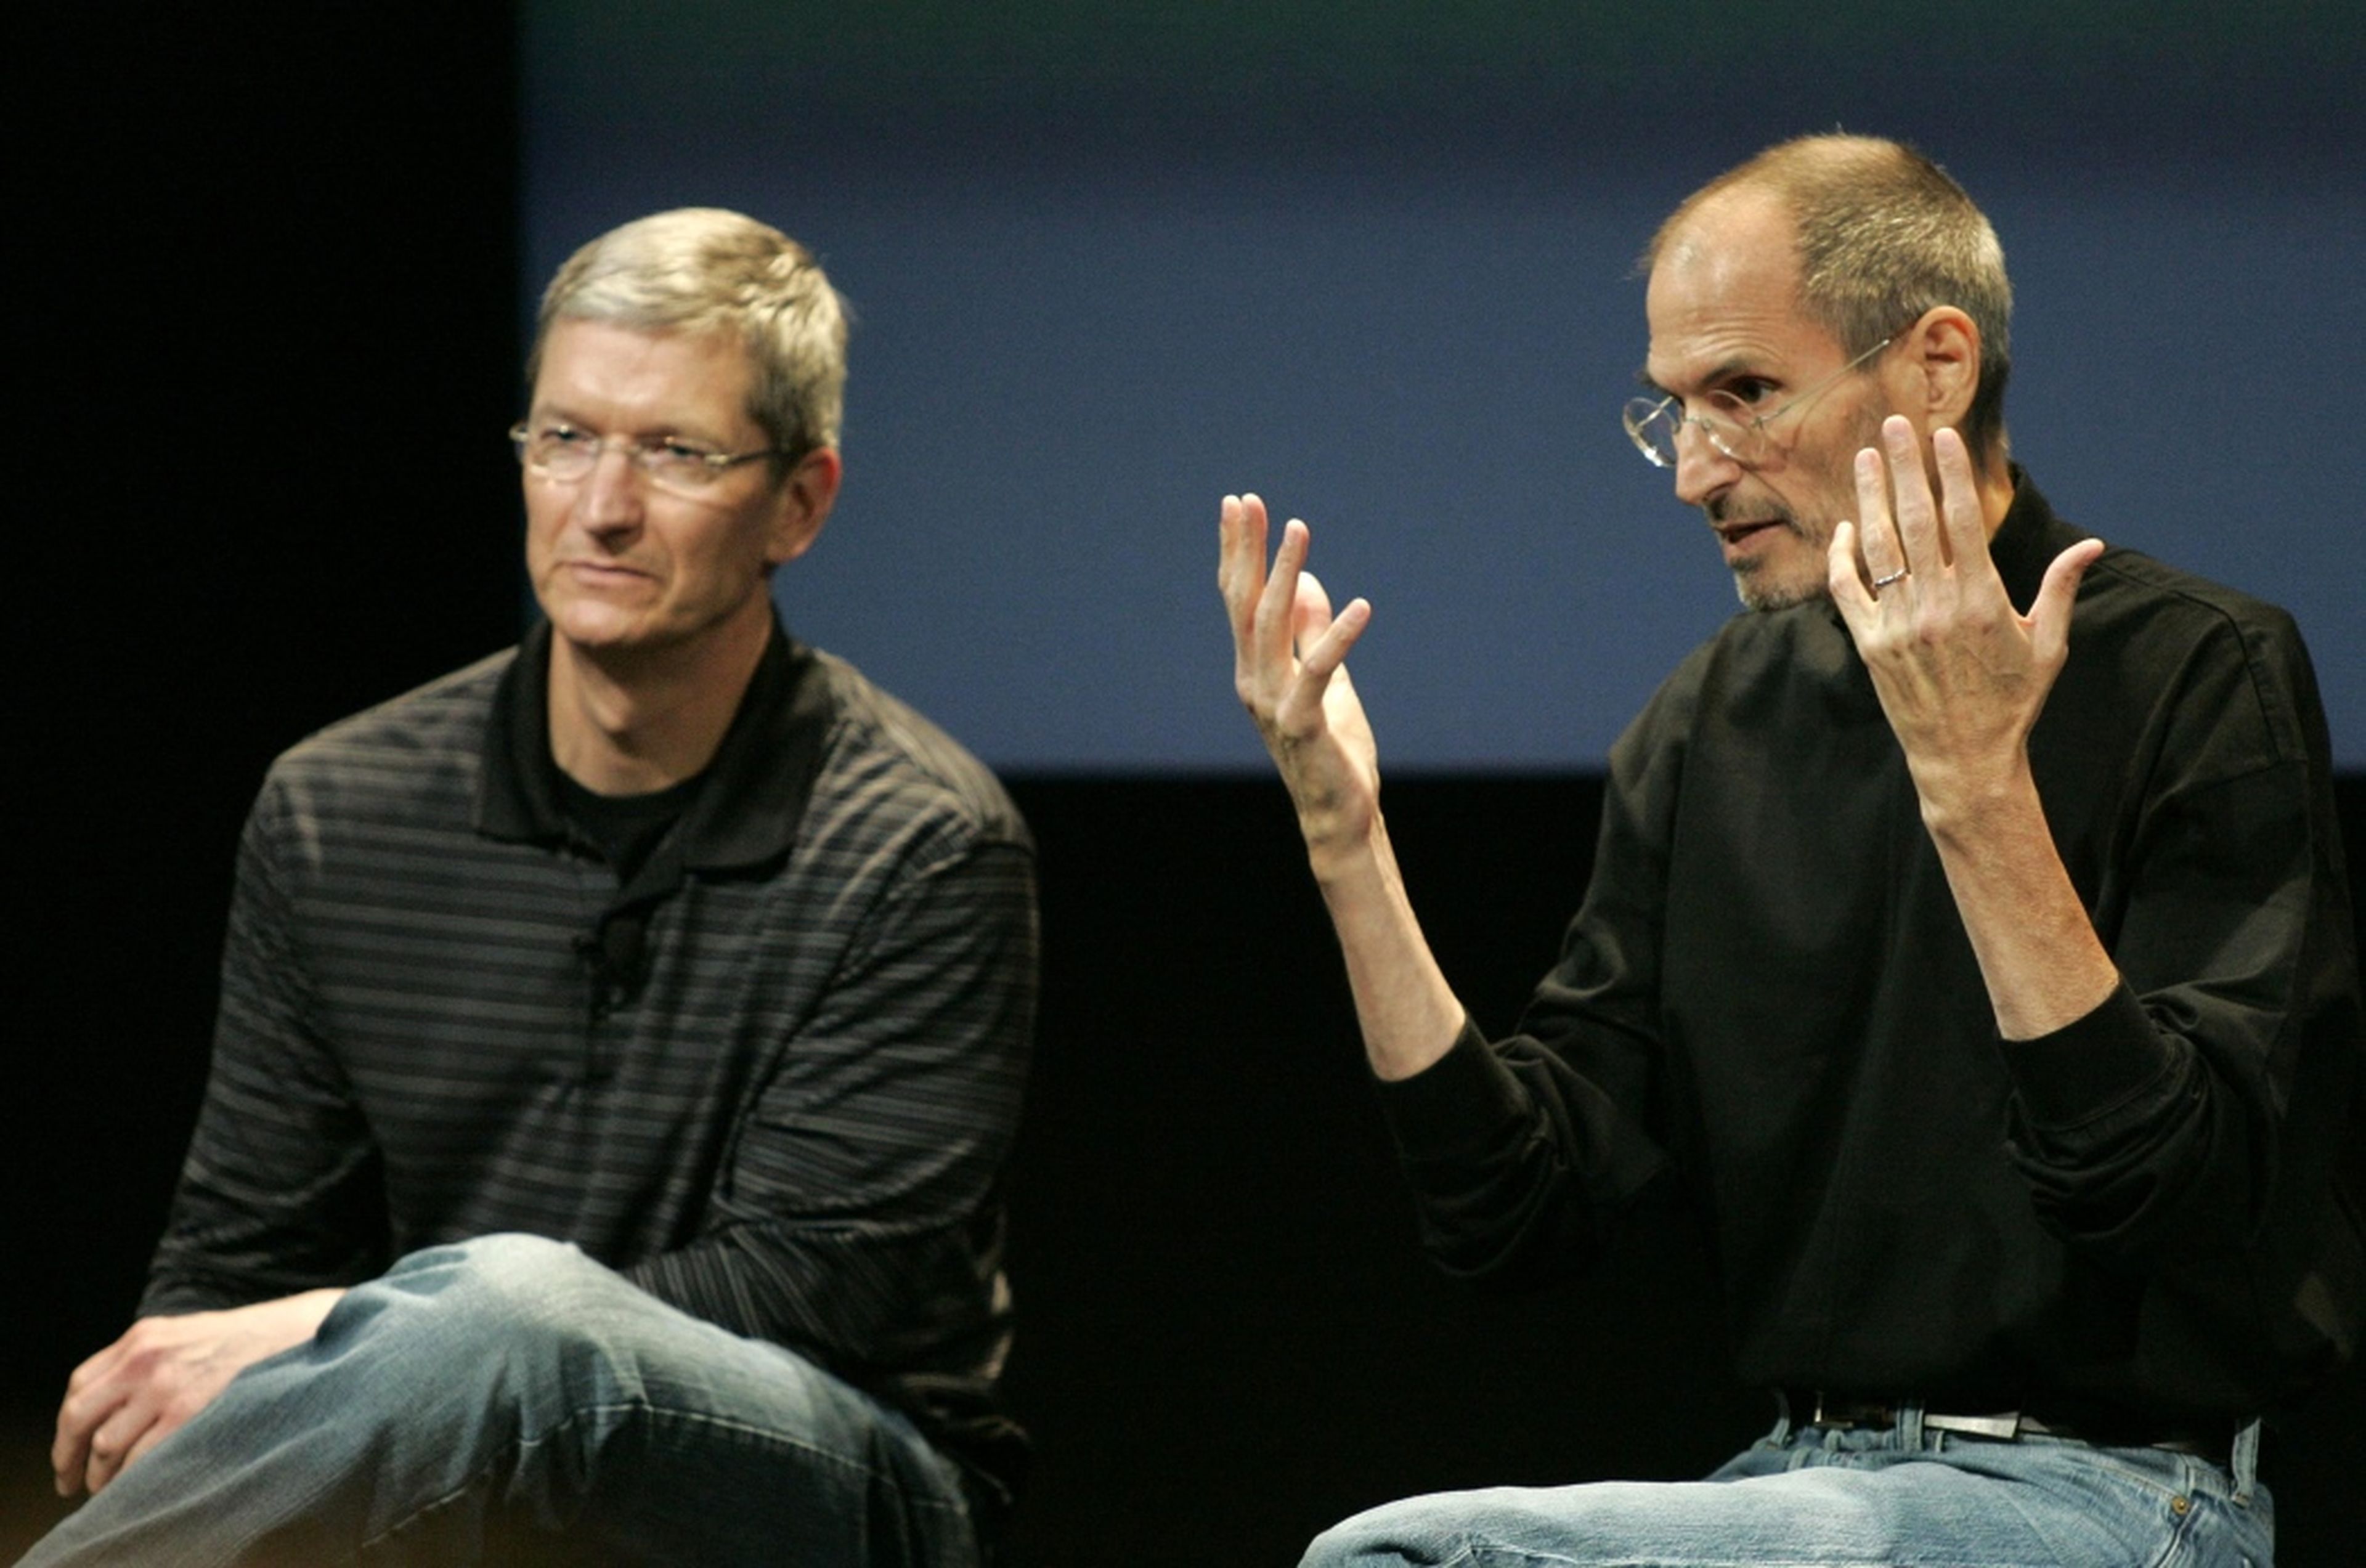 El ahora CEO de Apple, Tim Cook, y el fundador y exCEO Steve Jobs en una imagen de archivo de 2010 en una presentación en Cupertino.